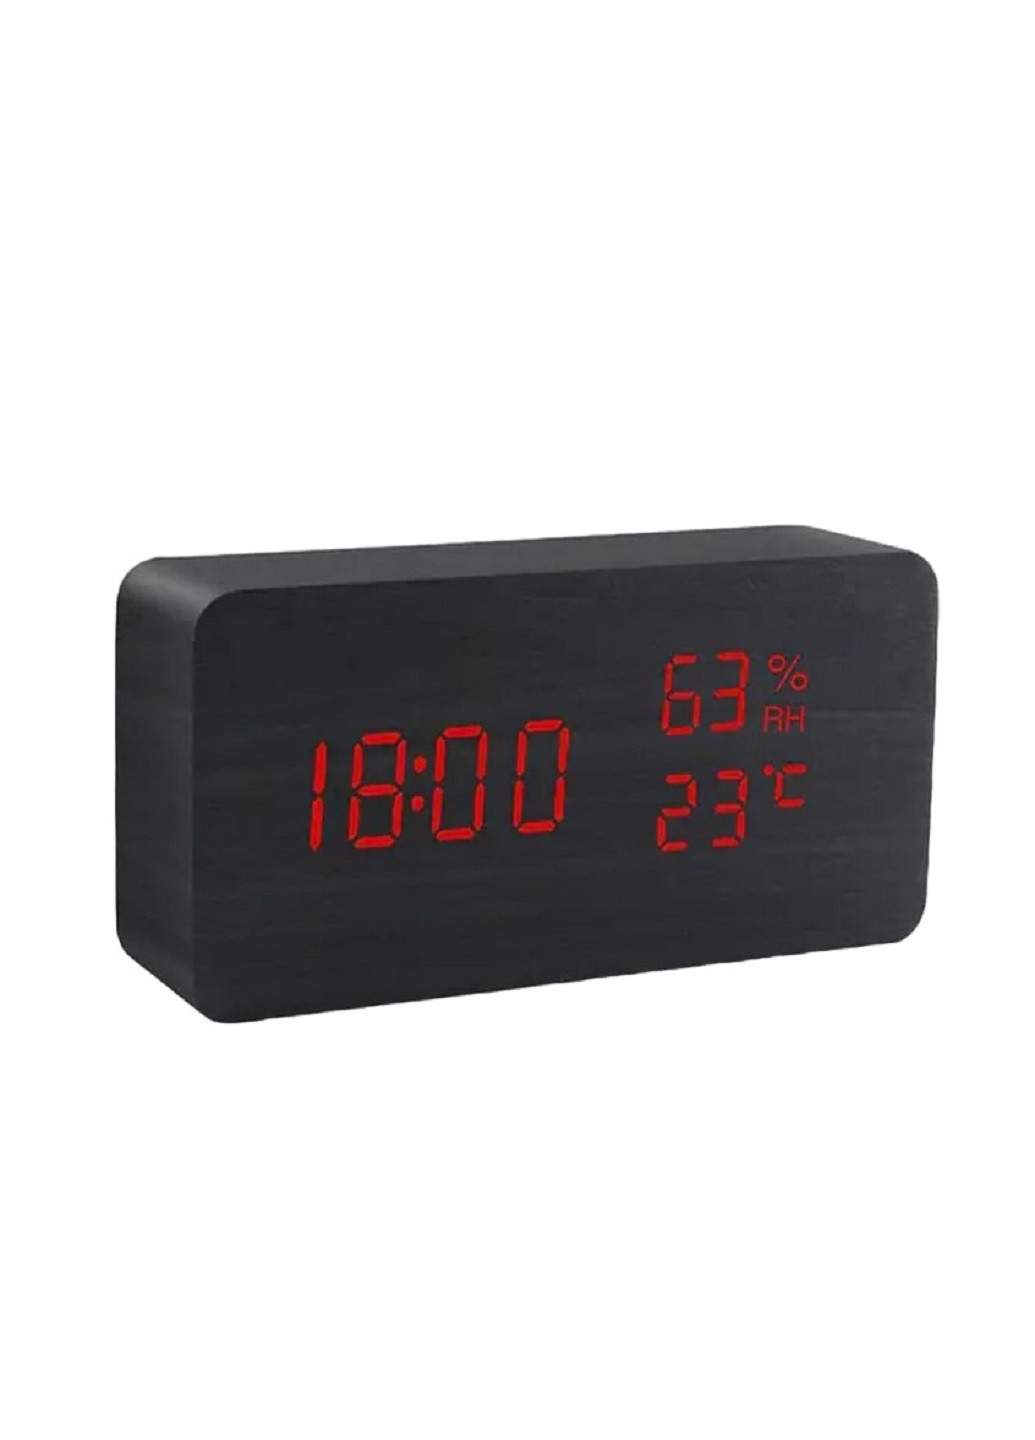 Часы настольные с термометром VST-862S Черный корпус Красная подсветка VTech (276534233)